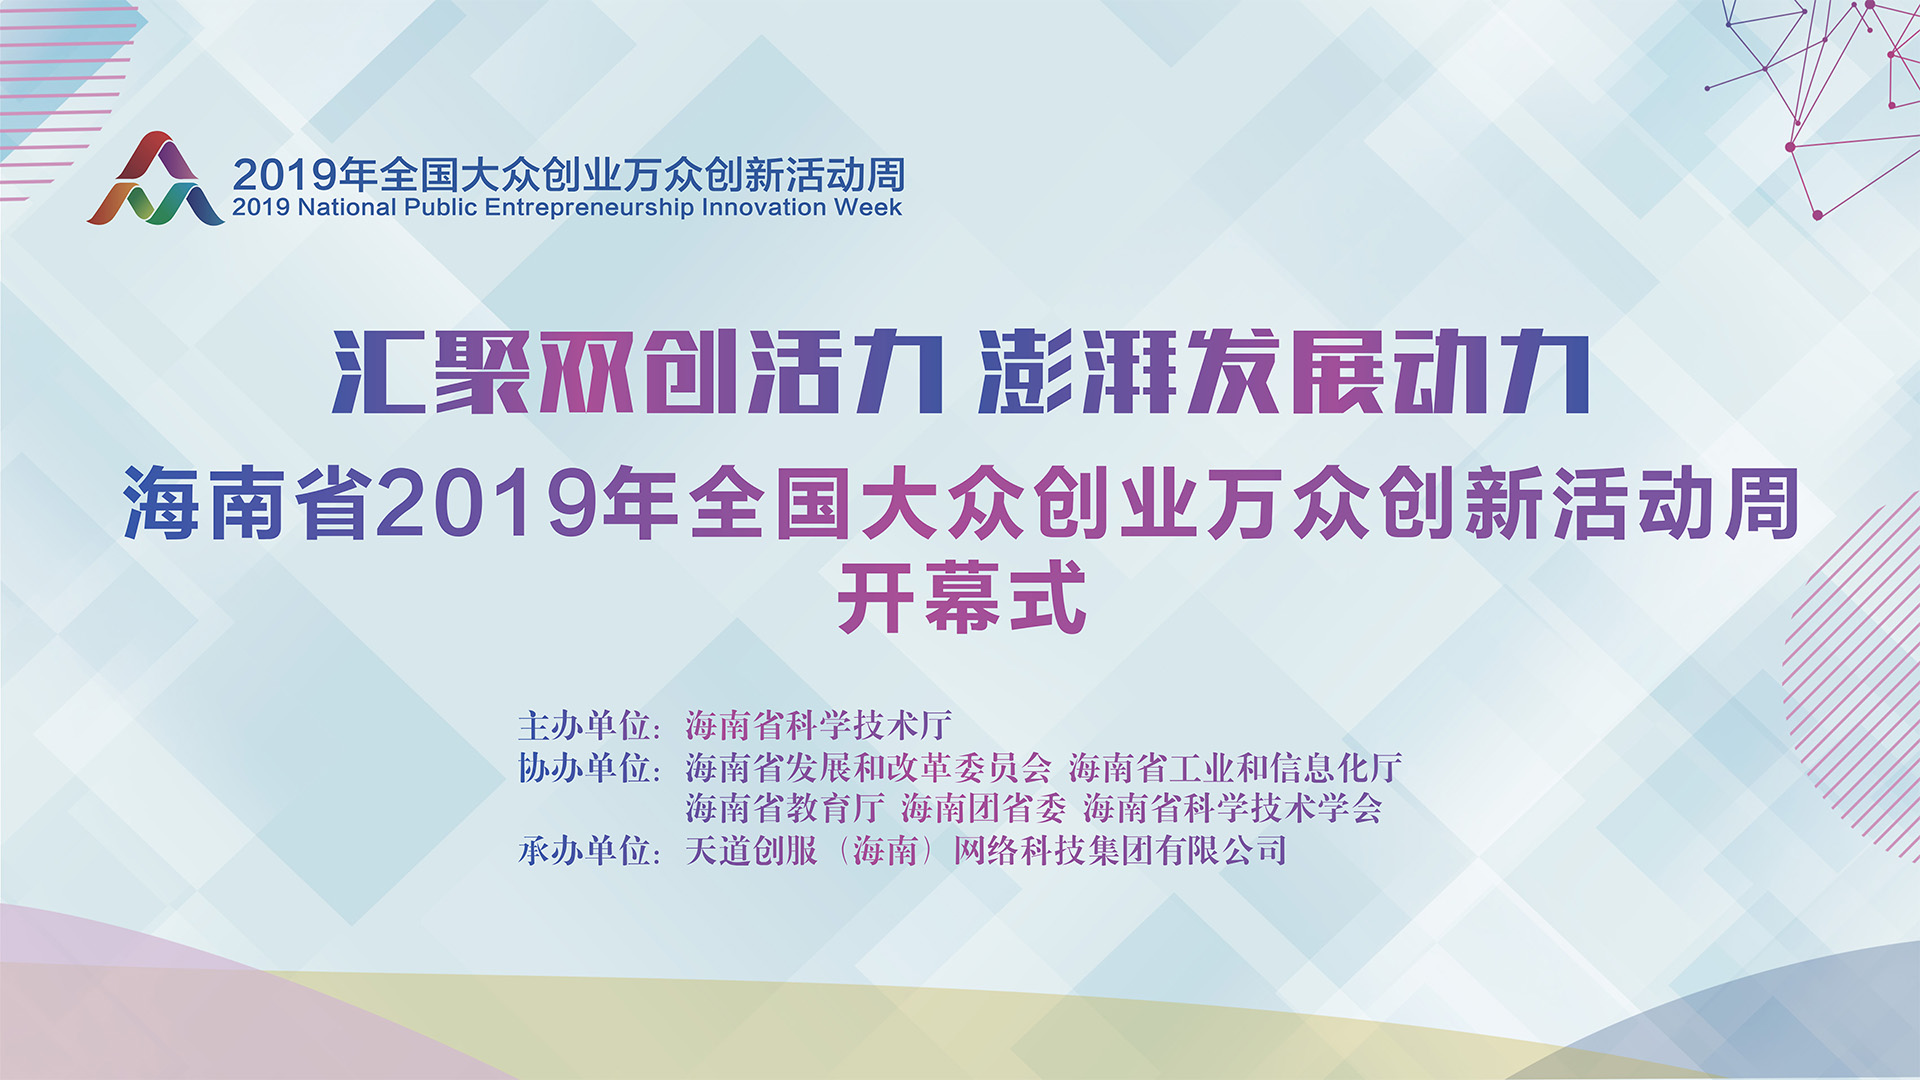 海南省2019年全国大众创业万众创新活动周即将拉开帷幕